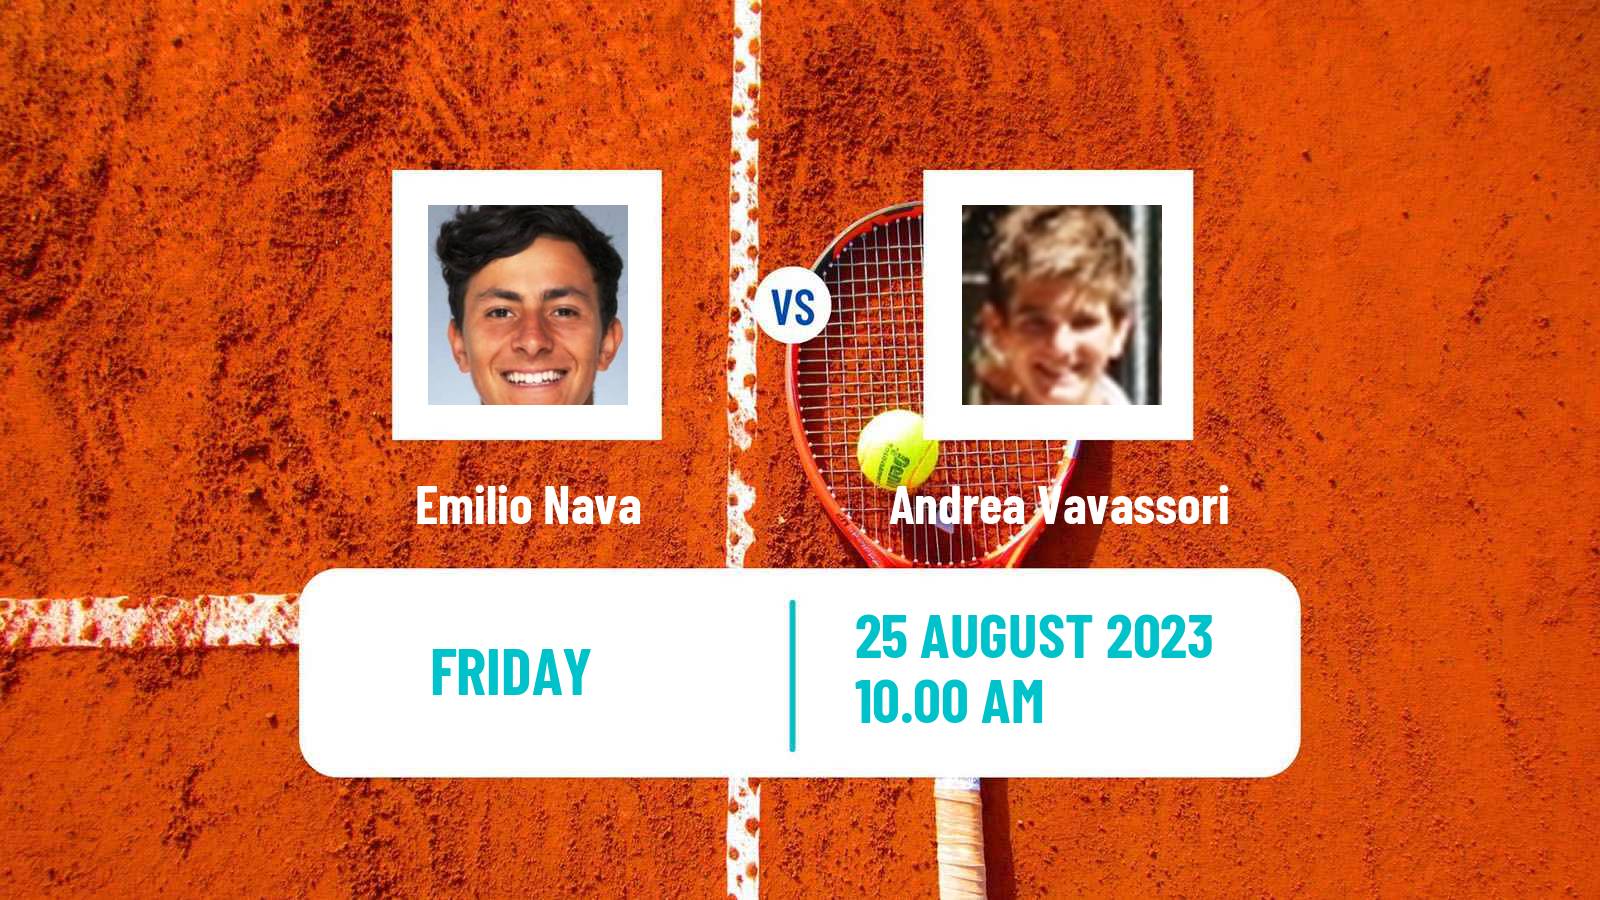 Tennis ATP US Open Emilio Nava - Andrea Vavassori